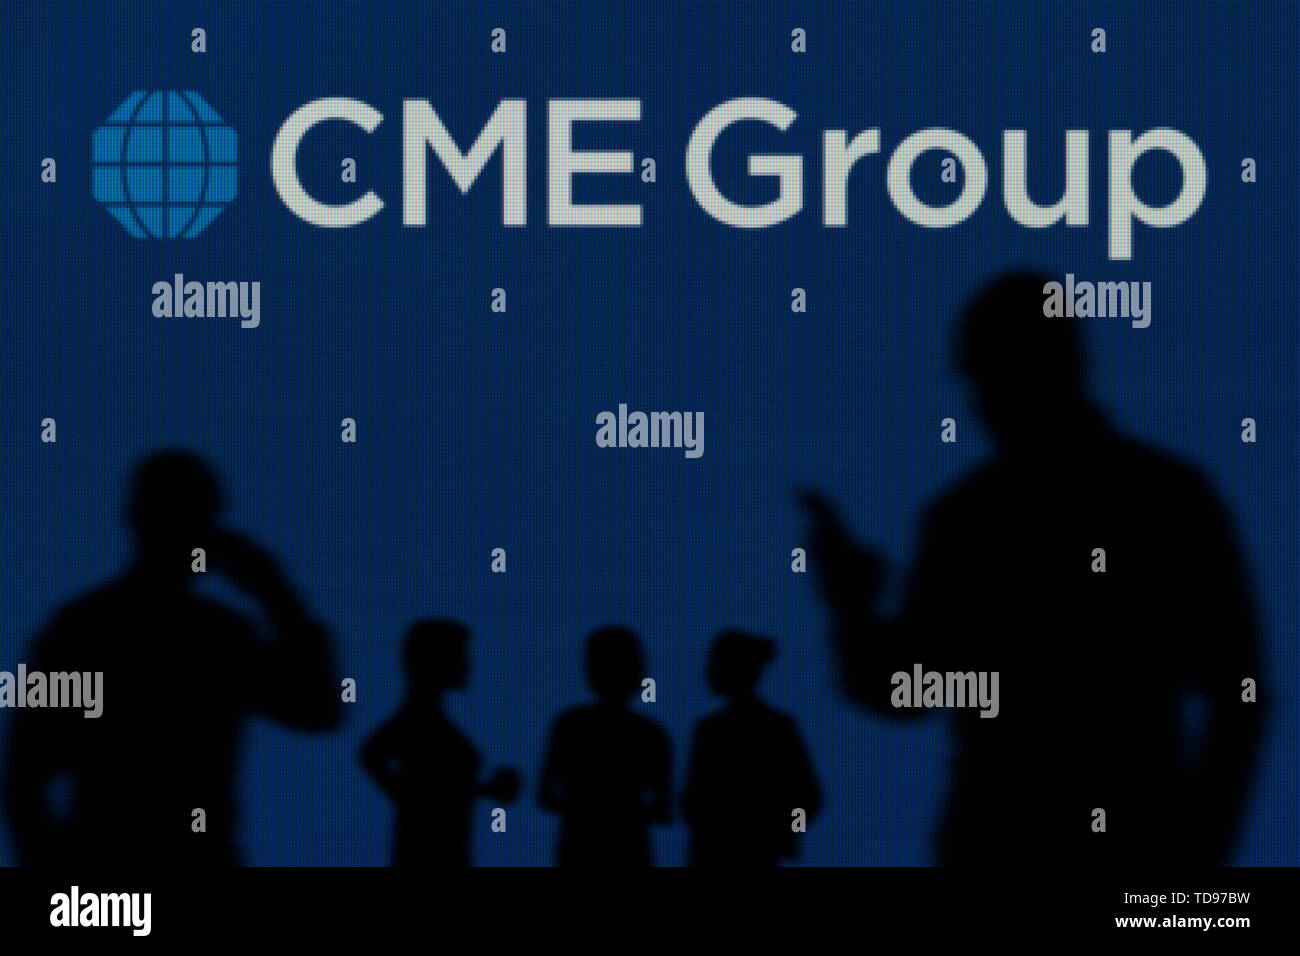 Il gruppo CME logo è visibile su uno schermo a LED in background mentre si profila una persona utilizza uno smartphone in primo piano (solo uso editoriale) Foto Stock